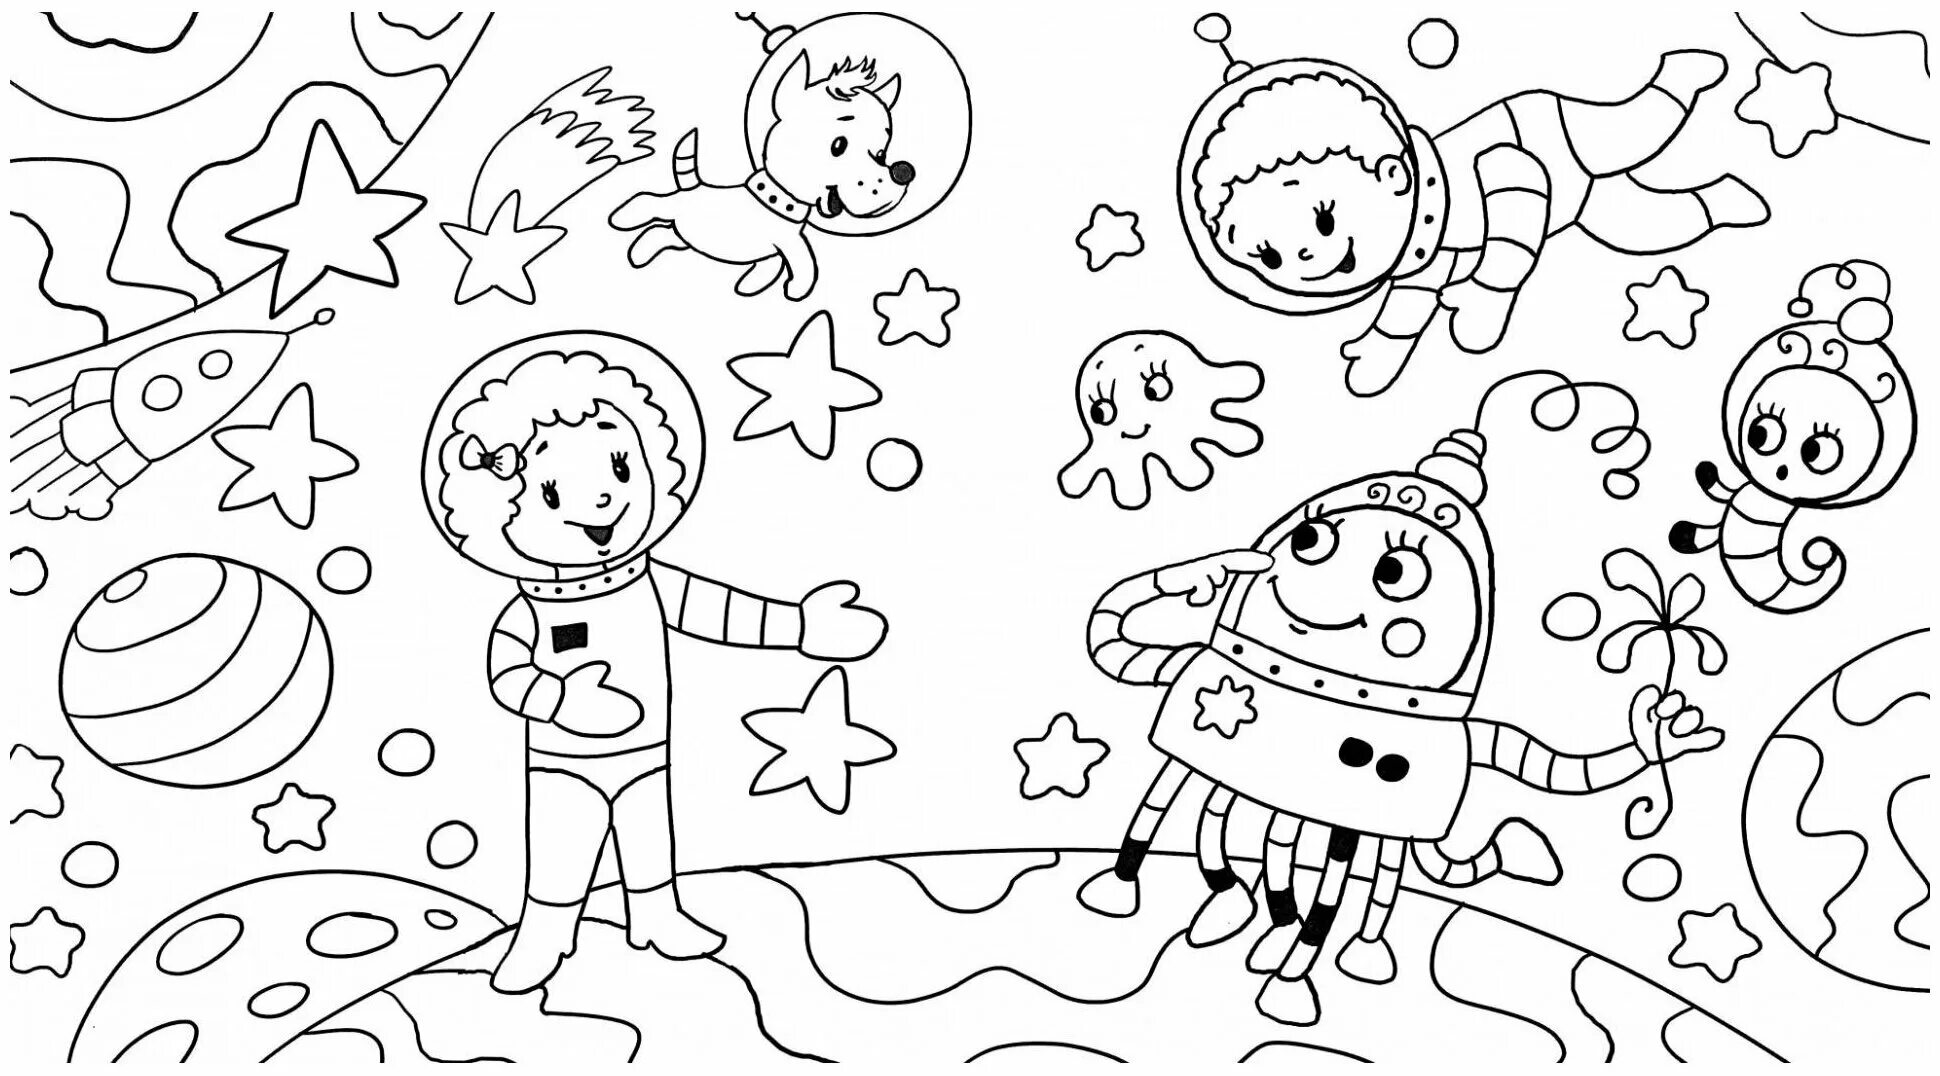 Раскраска космос 4 5 лет. Раскраска. В космосе. Космос раскраска для детей. Космические раскраски для детей. Раскраски для детей космас.